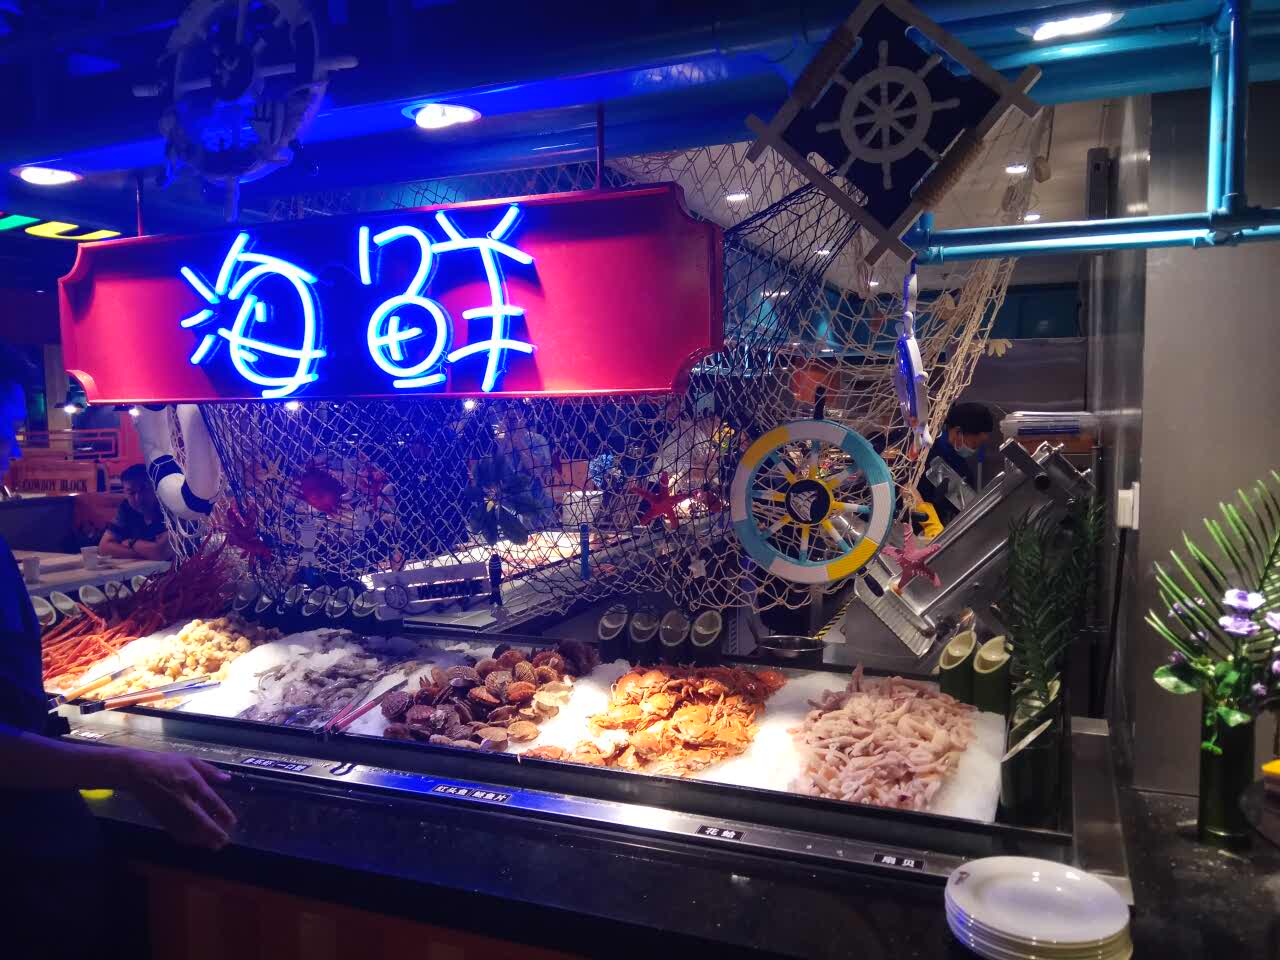 芝罘区万达广场自助餐图片